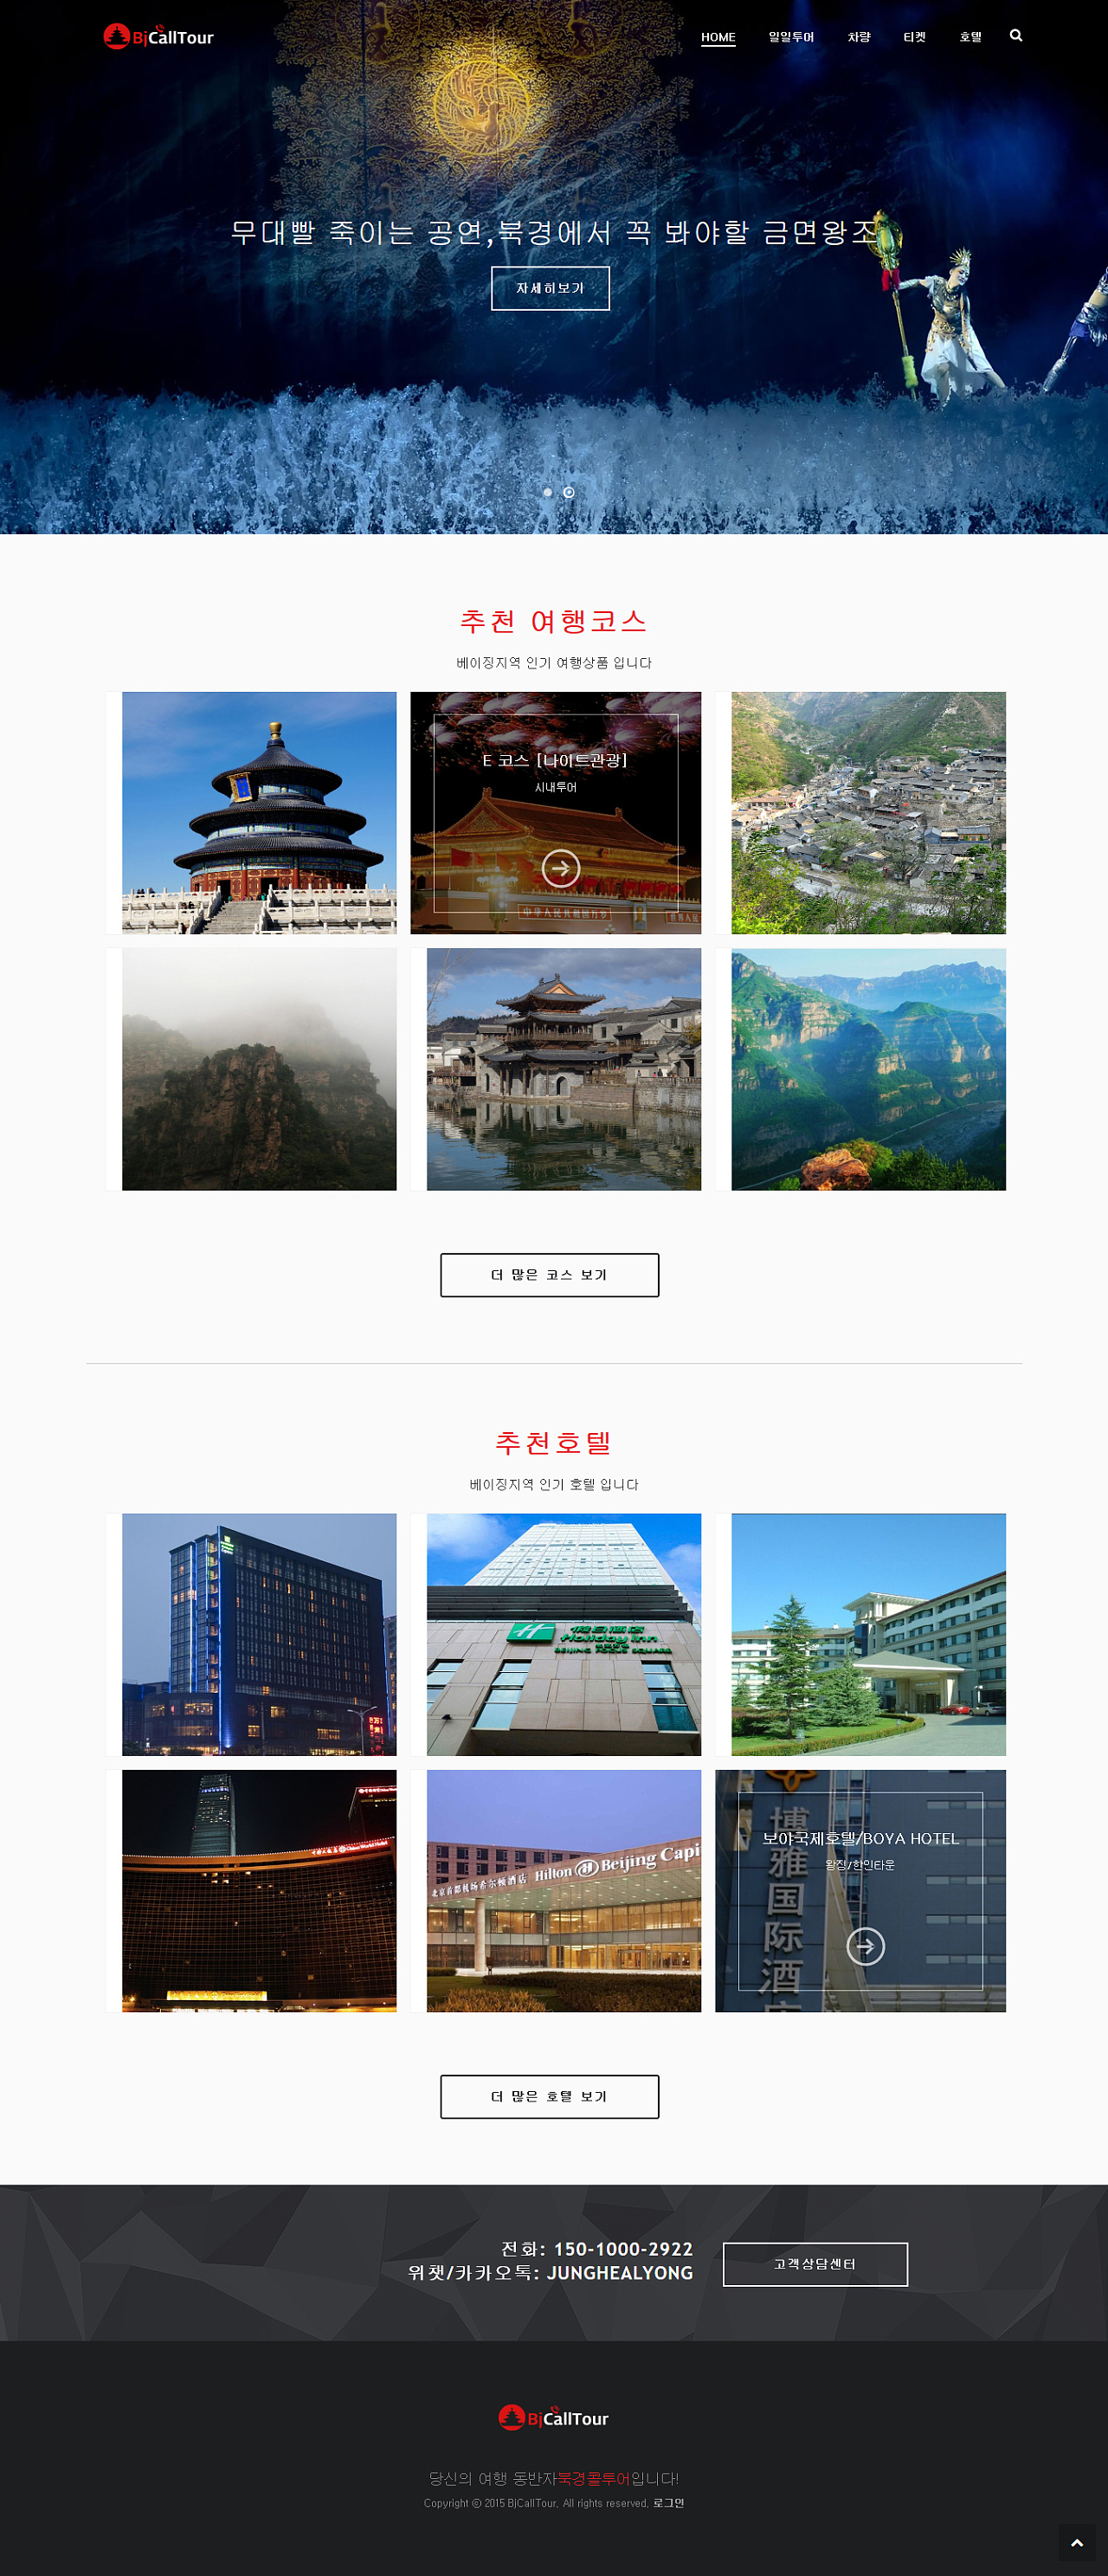 2021福建旅游（北京）全媒体推介会 多维度呈现文旅品牌特色_旅游_浙江经济网